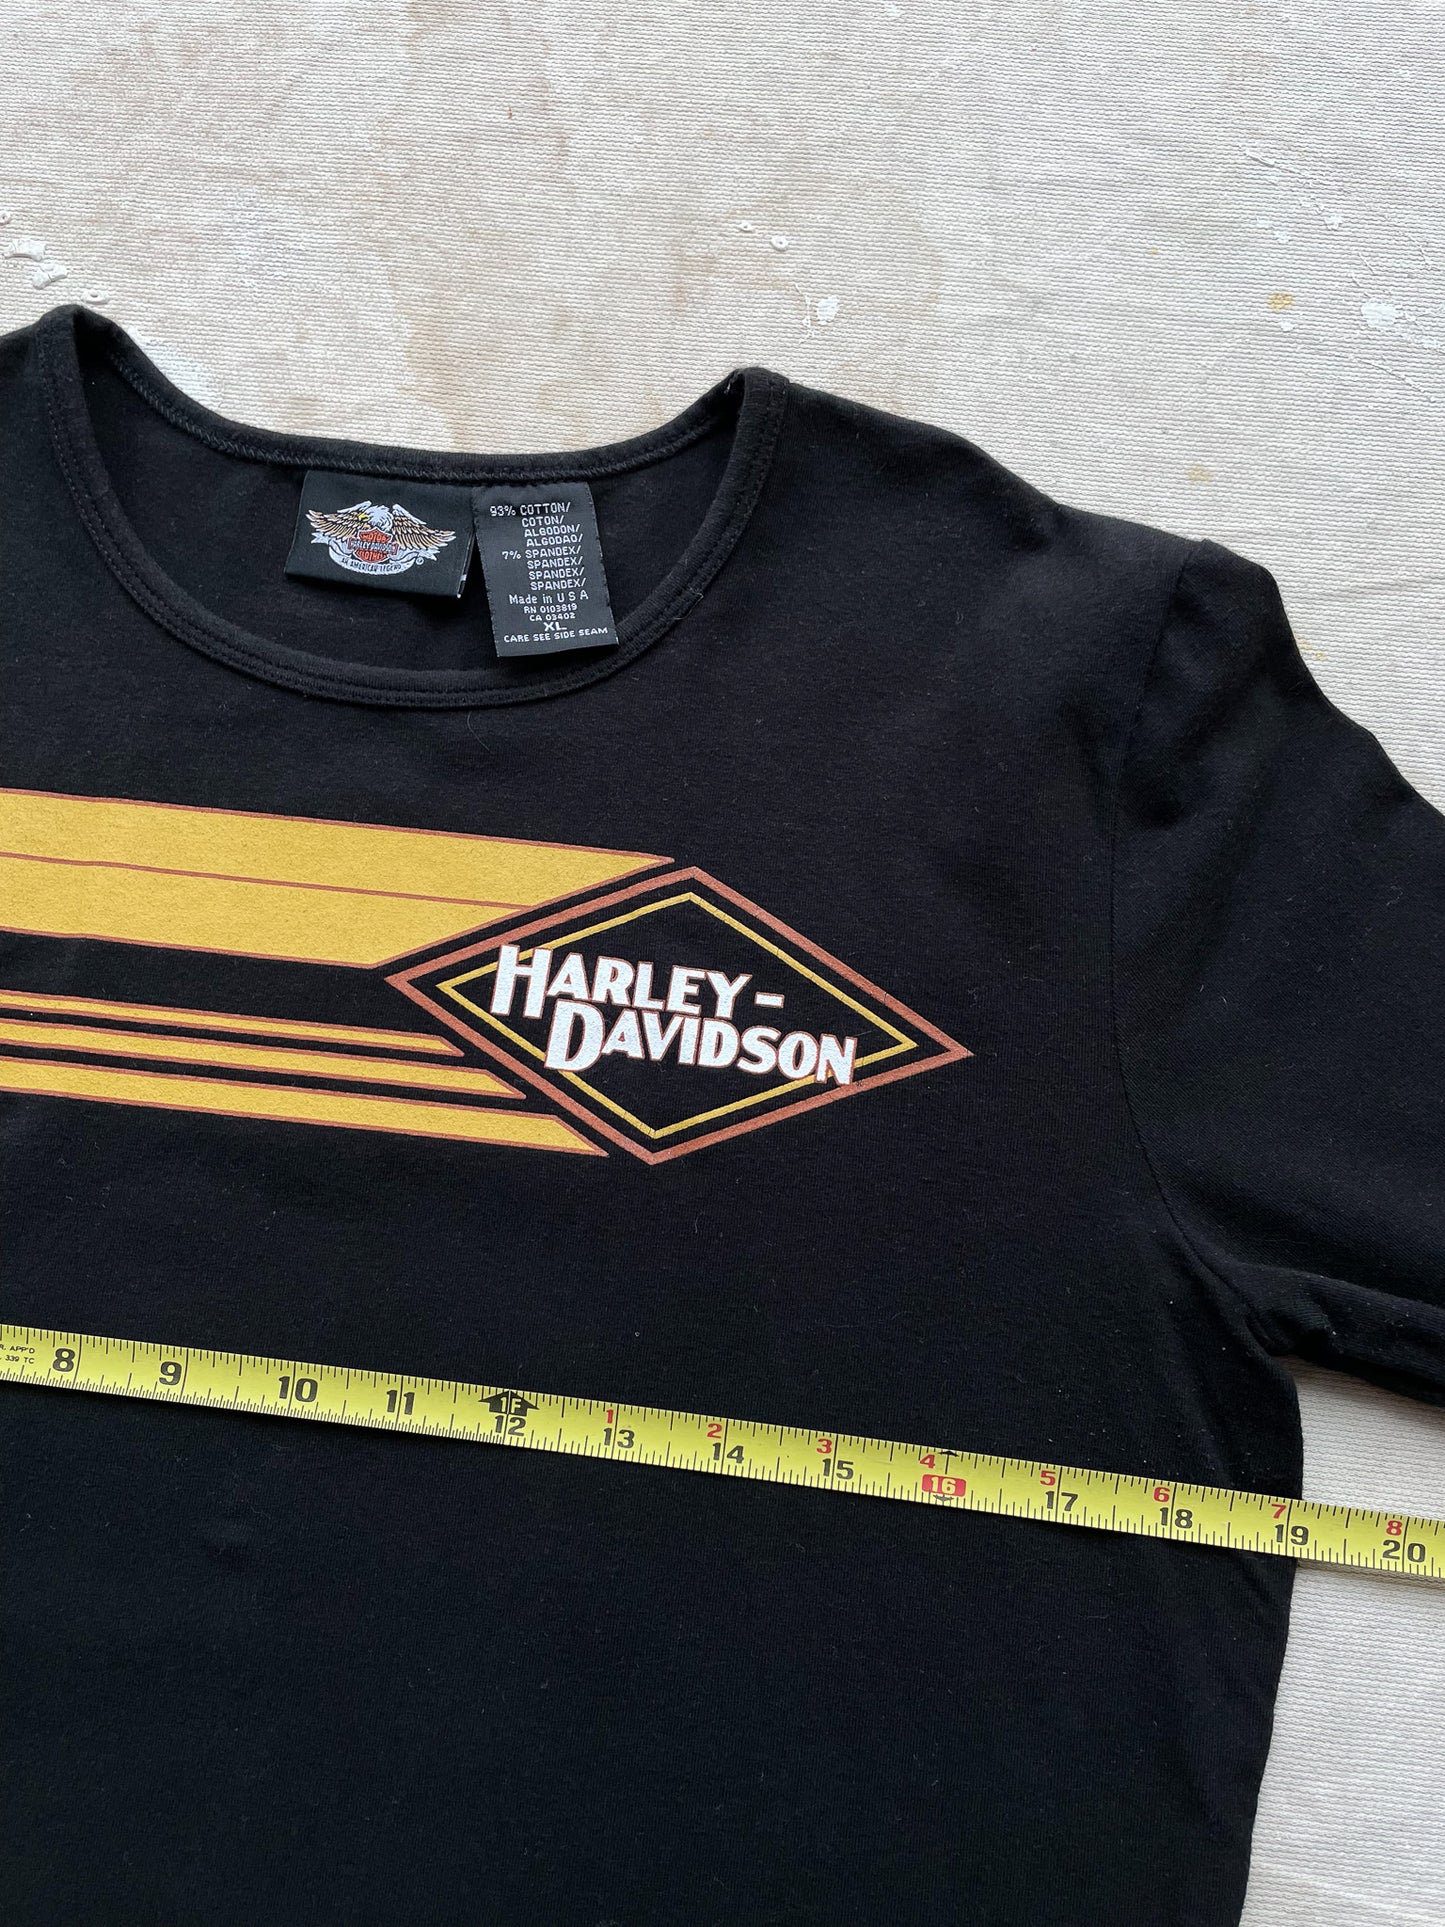 Harley-Davidson Long Sleeve T-Shirt—[M]